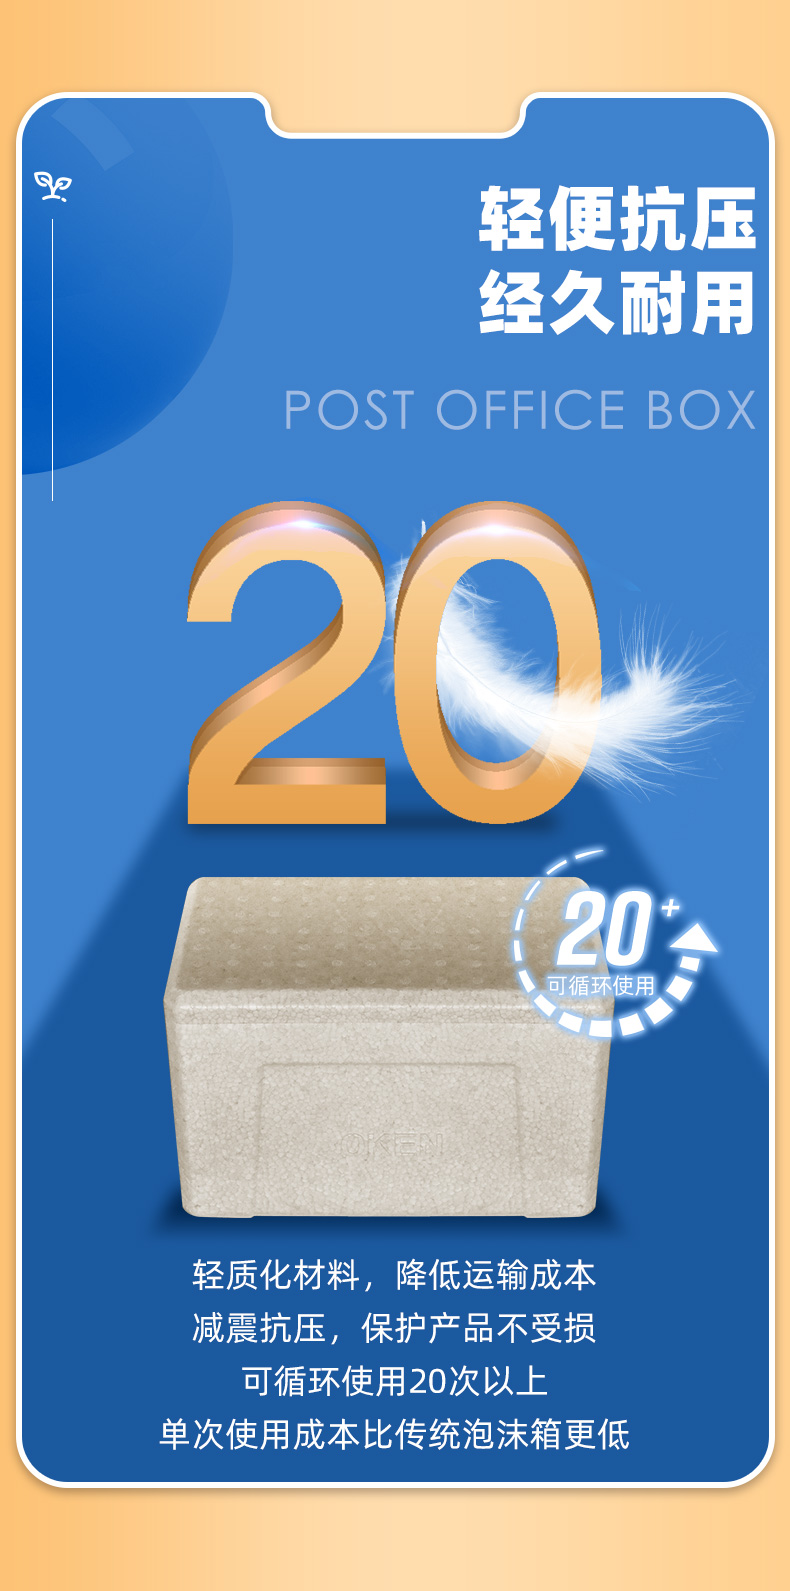 环保EPP邮政箱,邮政快递箱厂家,,邮政快递箱,EPP邮政箱,邮政箱生产厂家